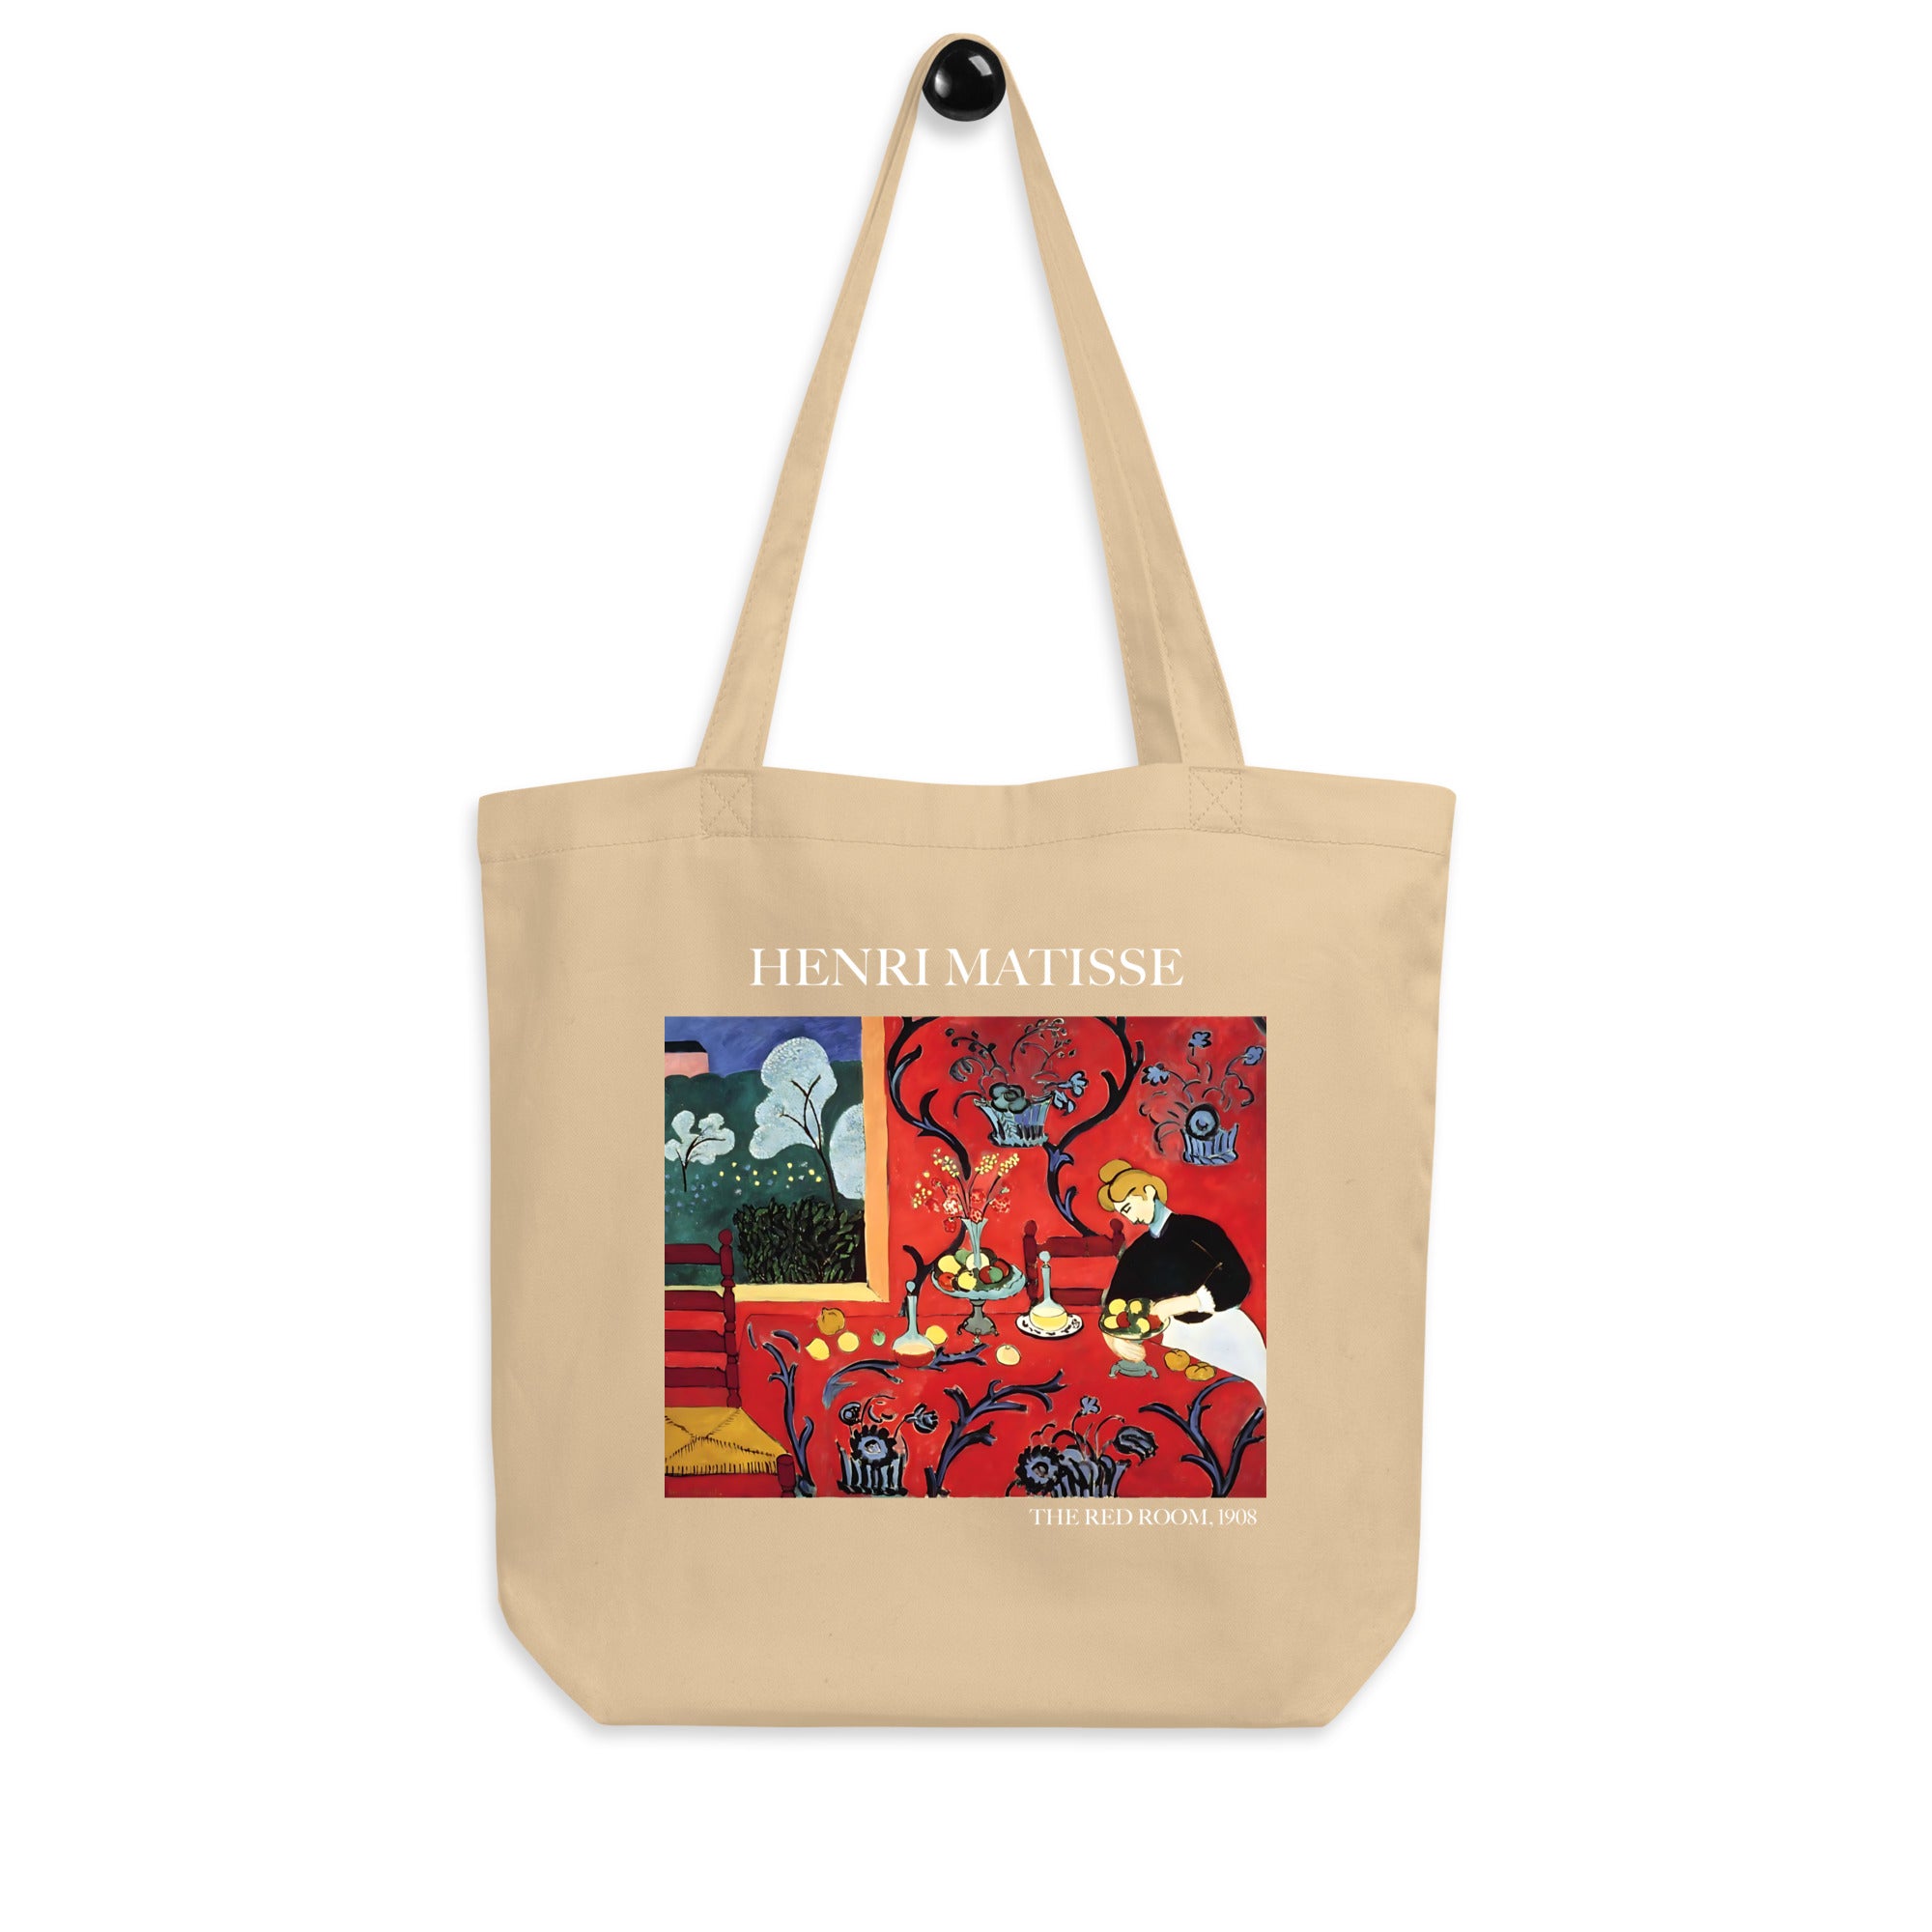 Henri Matisse 'Das rote Zimmer' berühmtes Gemälde Tragetasche | Umweltfreundliche Kunst Tragetasche